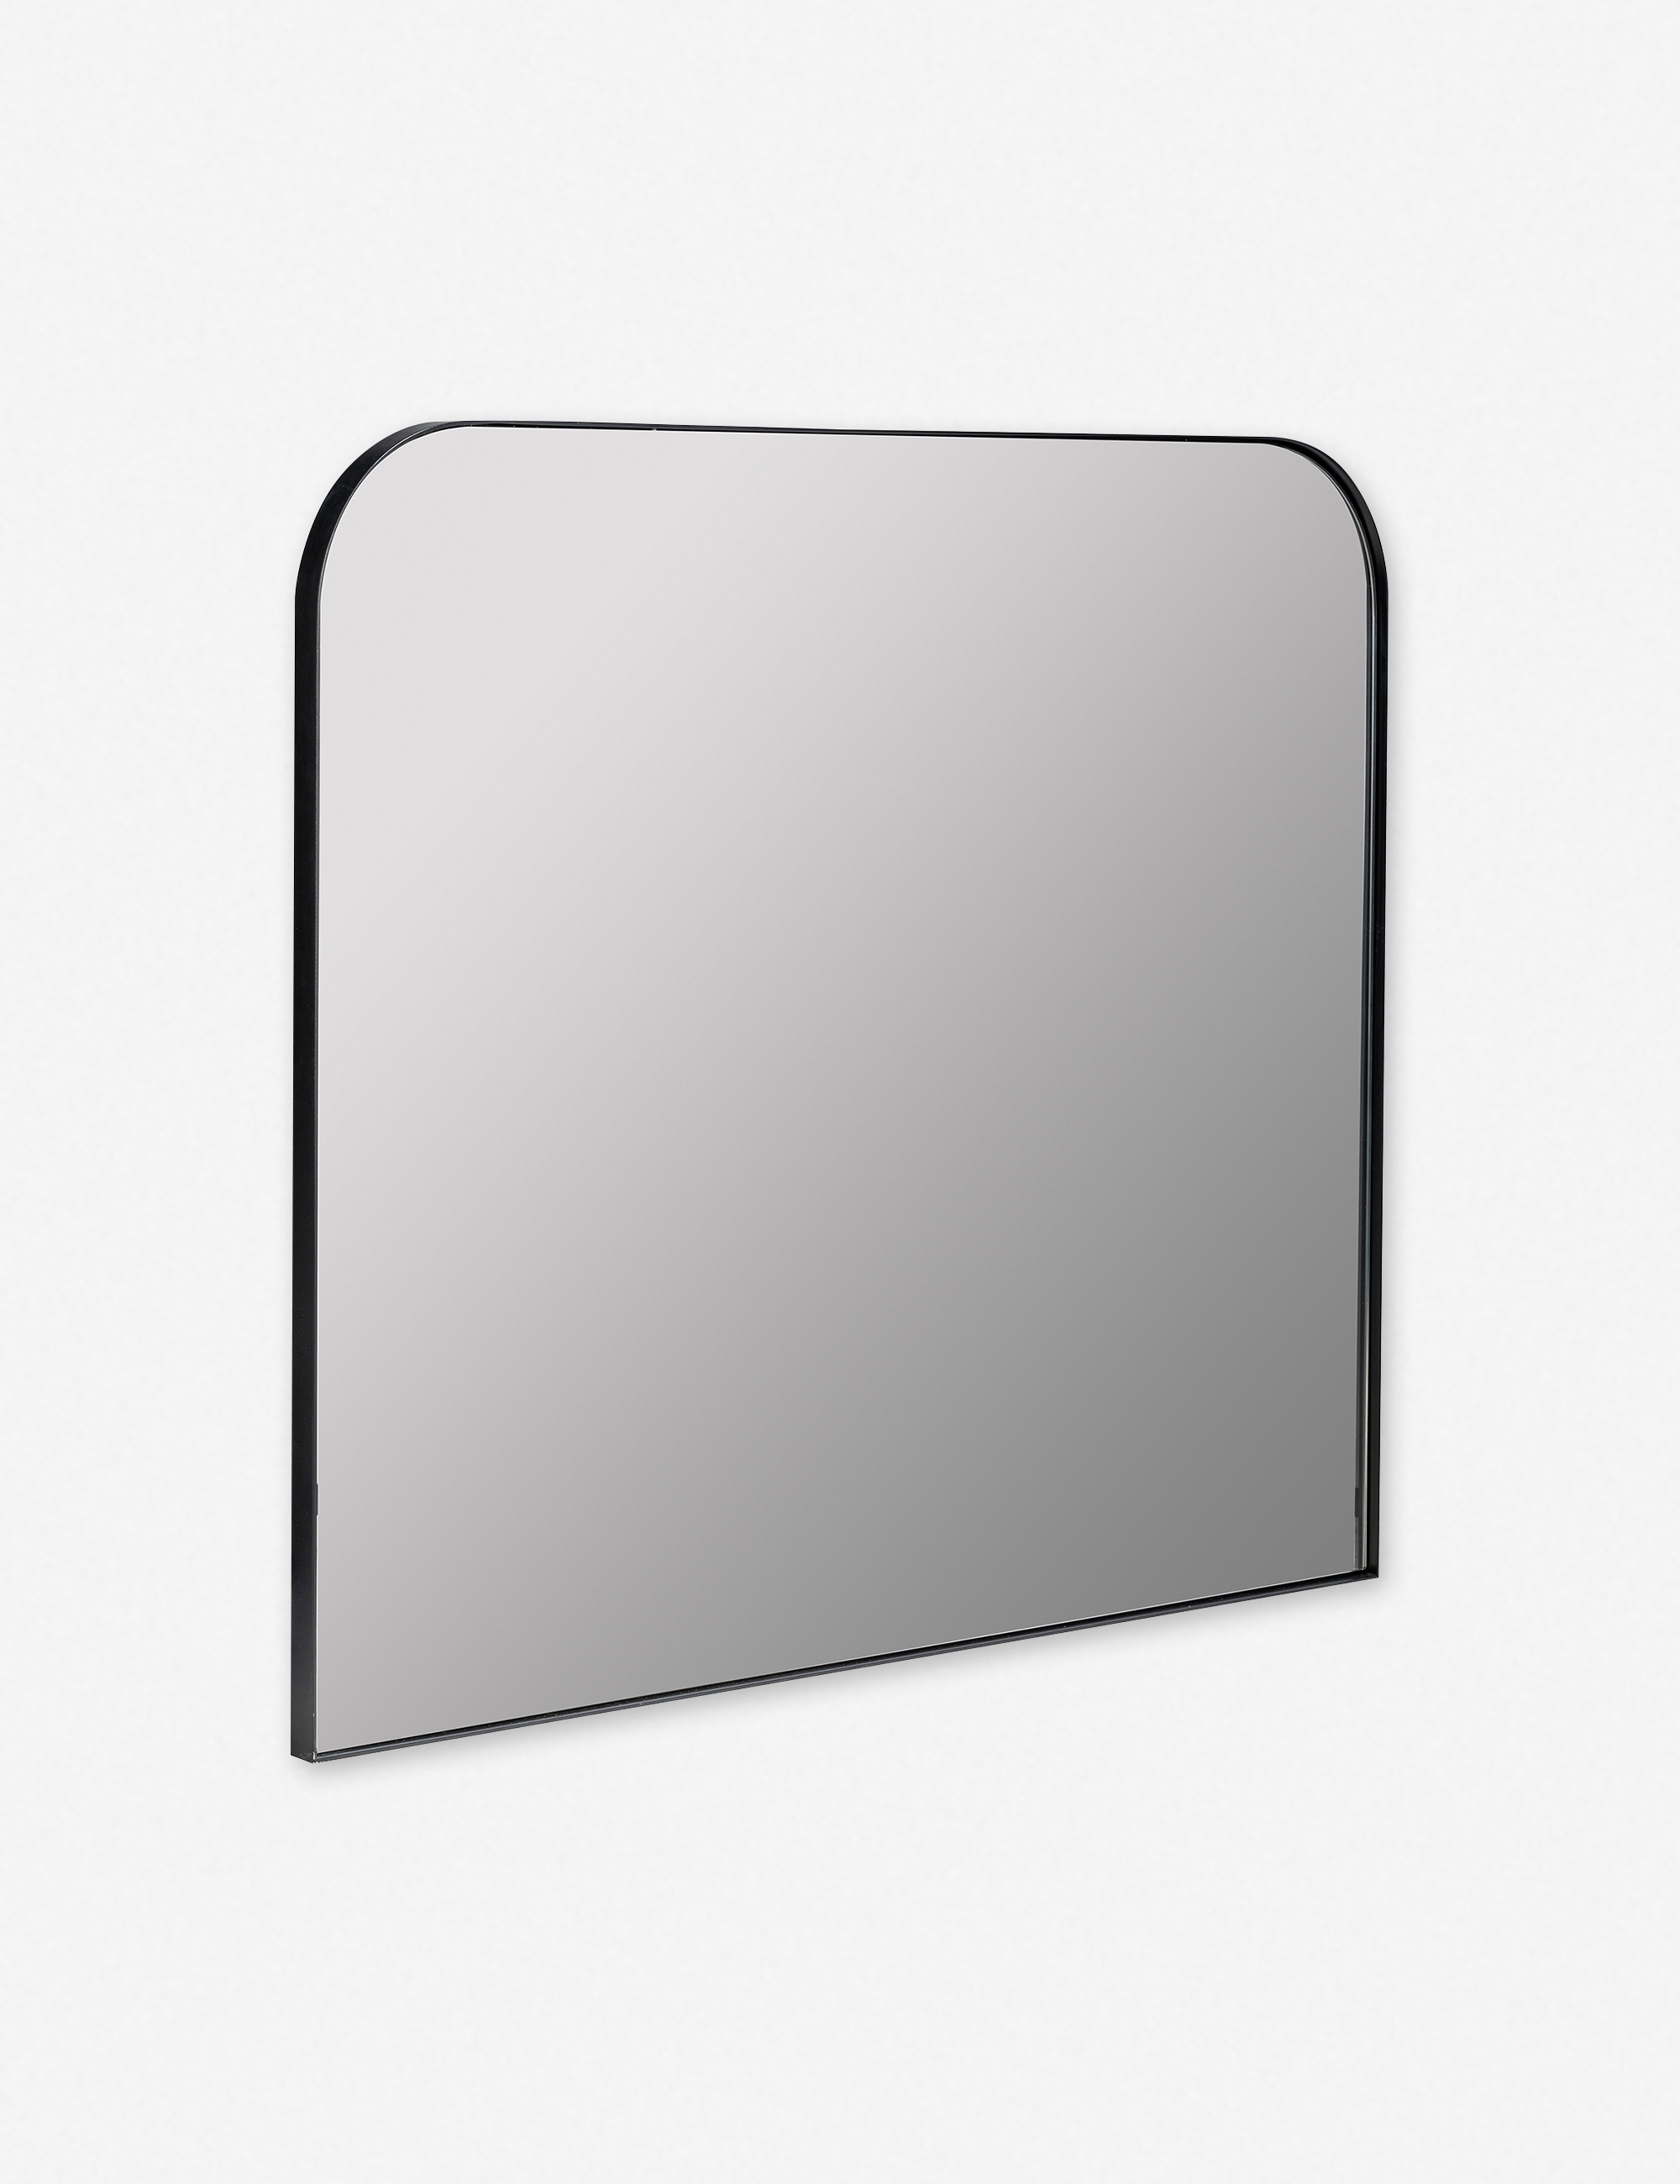 Risette Mirror - Image 2